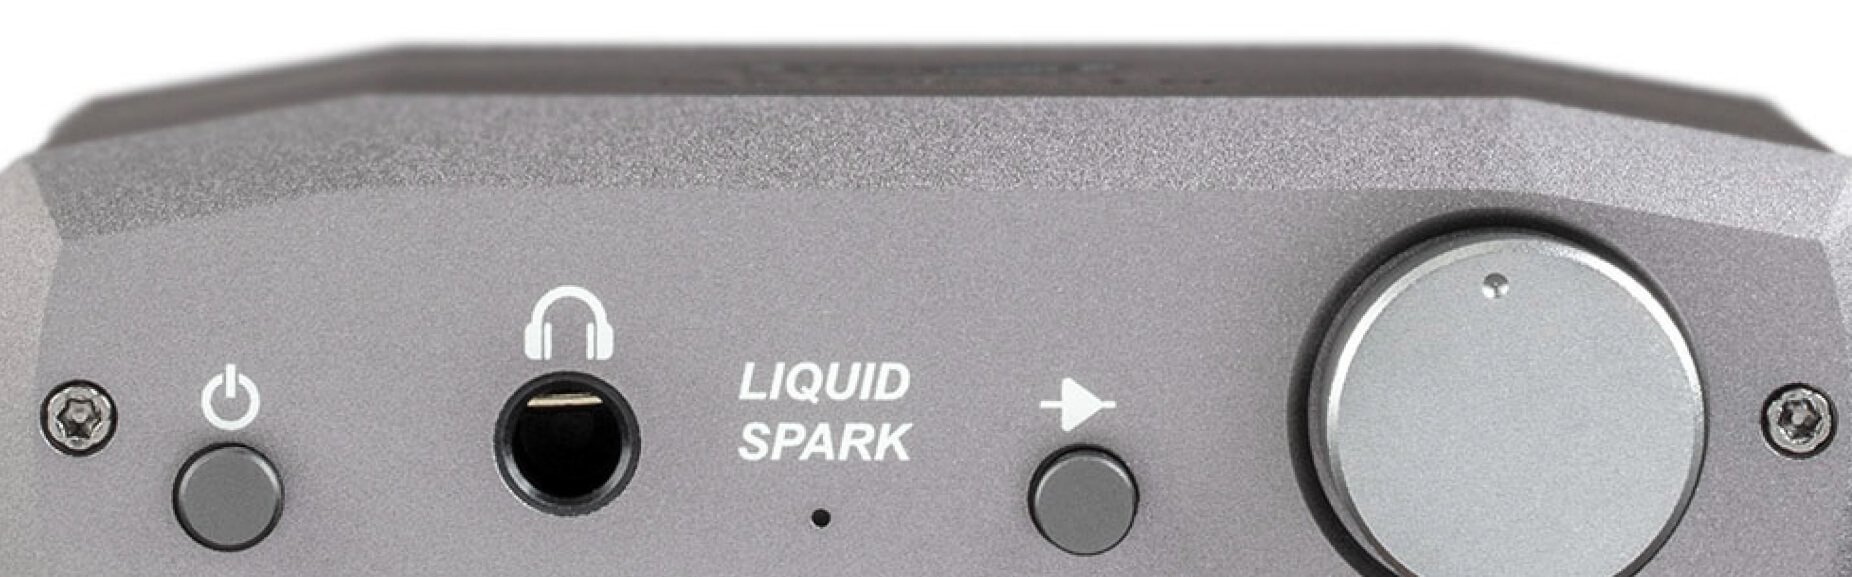 Liquid Spark